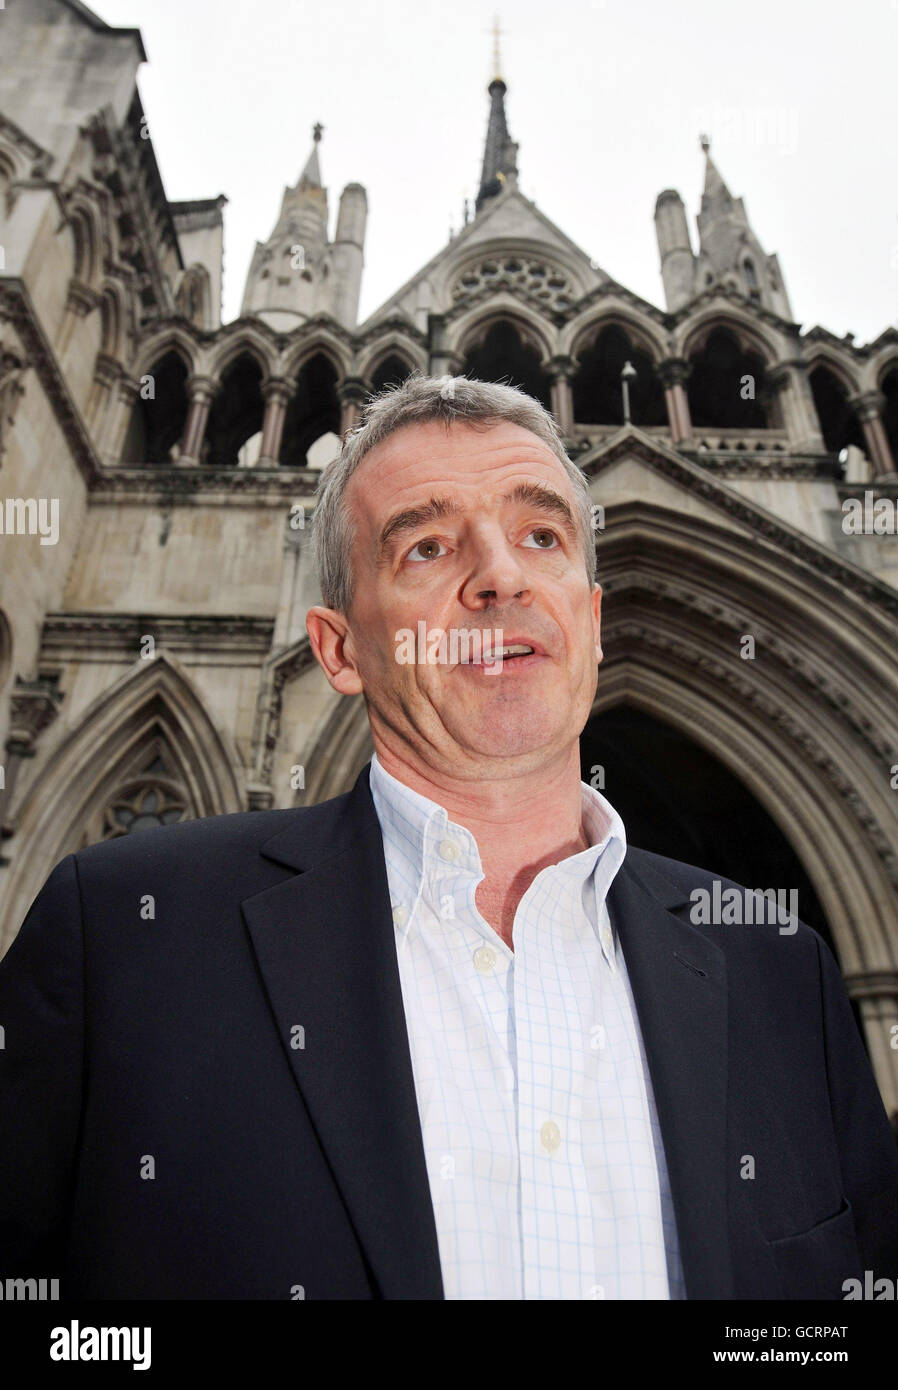 Le patron de Ryanair Michael O'Leary devant la haute Cour de Londres à la suite d'une décision qui pourrait forcer l'exploitant d'aéroport BAA à se conformer à une ordonnance de vendre trois de ses aéroports. Banque D'Images